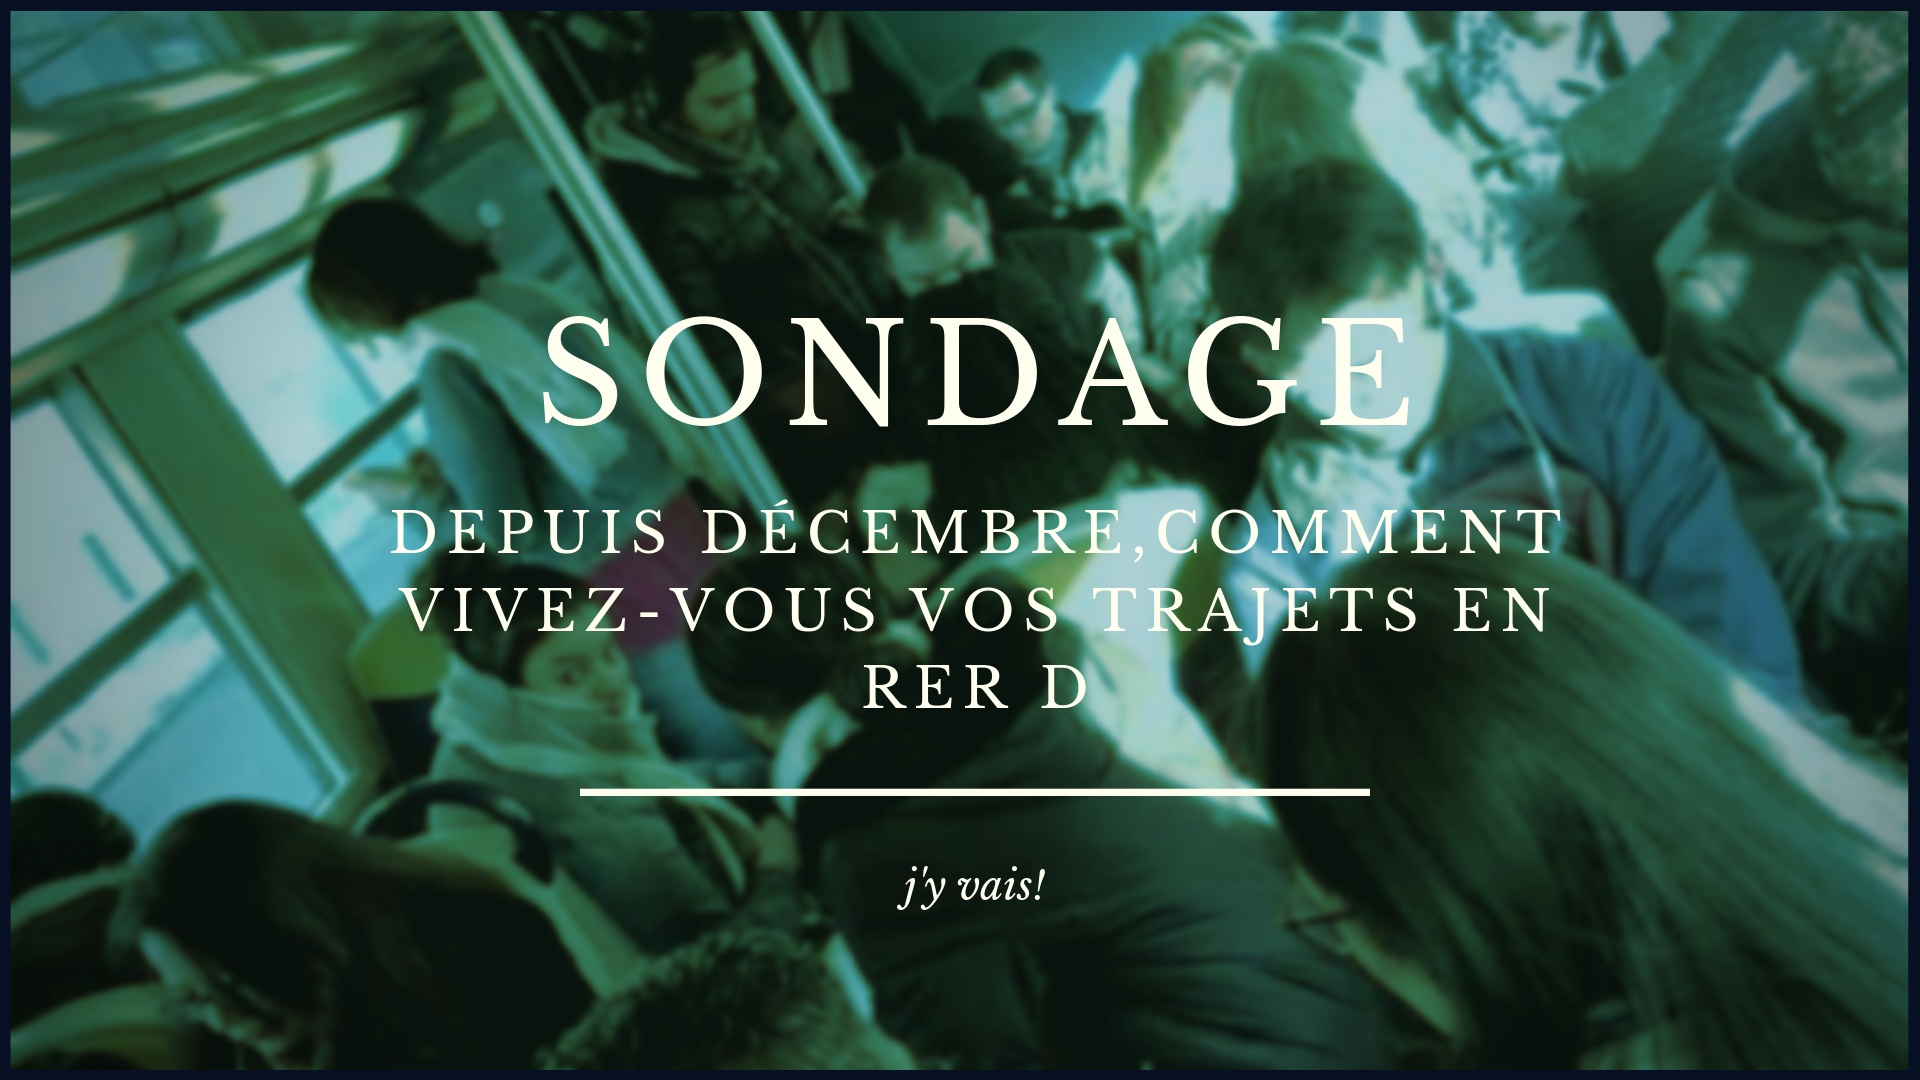 You are currently viewing Sondage : dîtes-nous comment vous vivez vos trajets depuis le mois de décembre 2018.